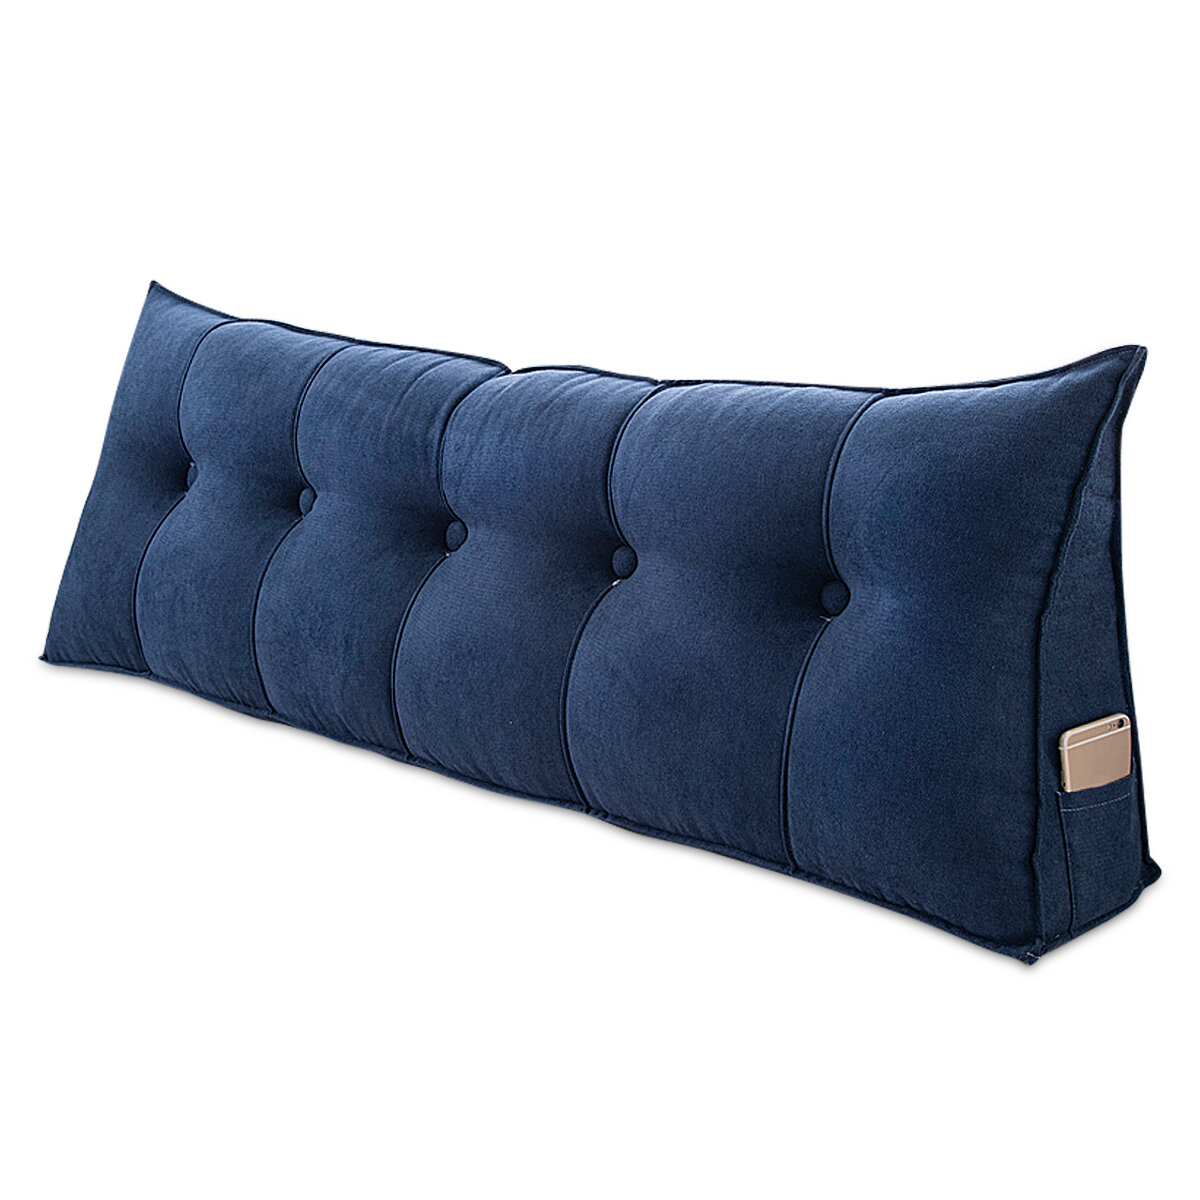 Sofa Rücken Kissen Bett Couch Sitz Rest Pad Taille Unterstützung Rückenlehne Dreieckige Keilkissen Home Office Möbel Dek